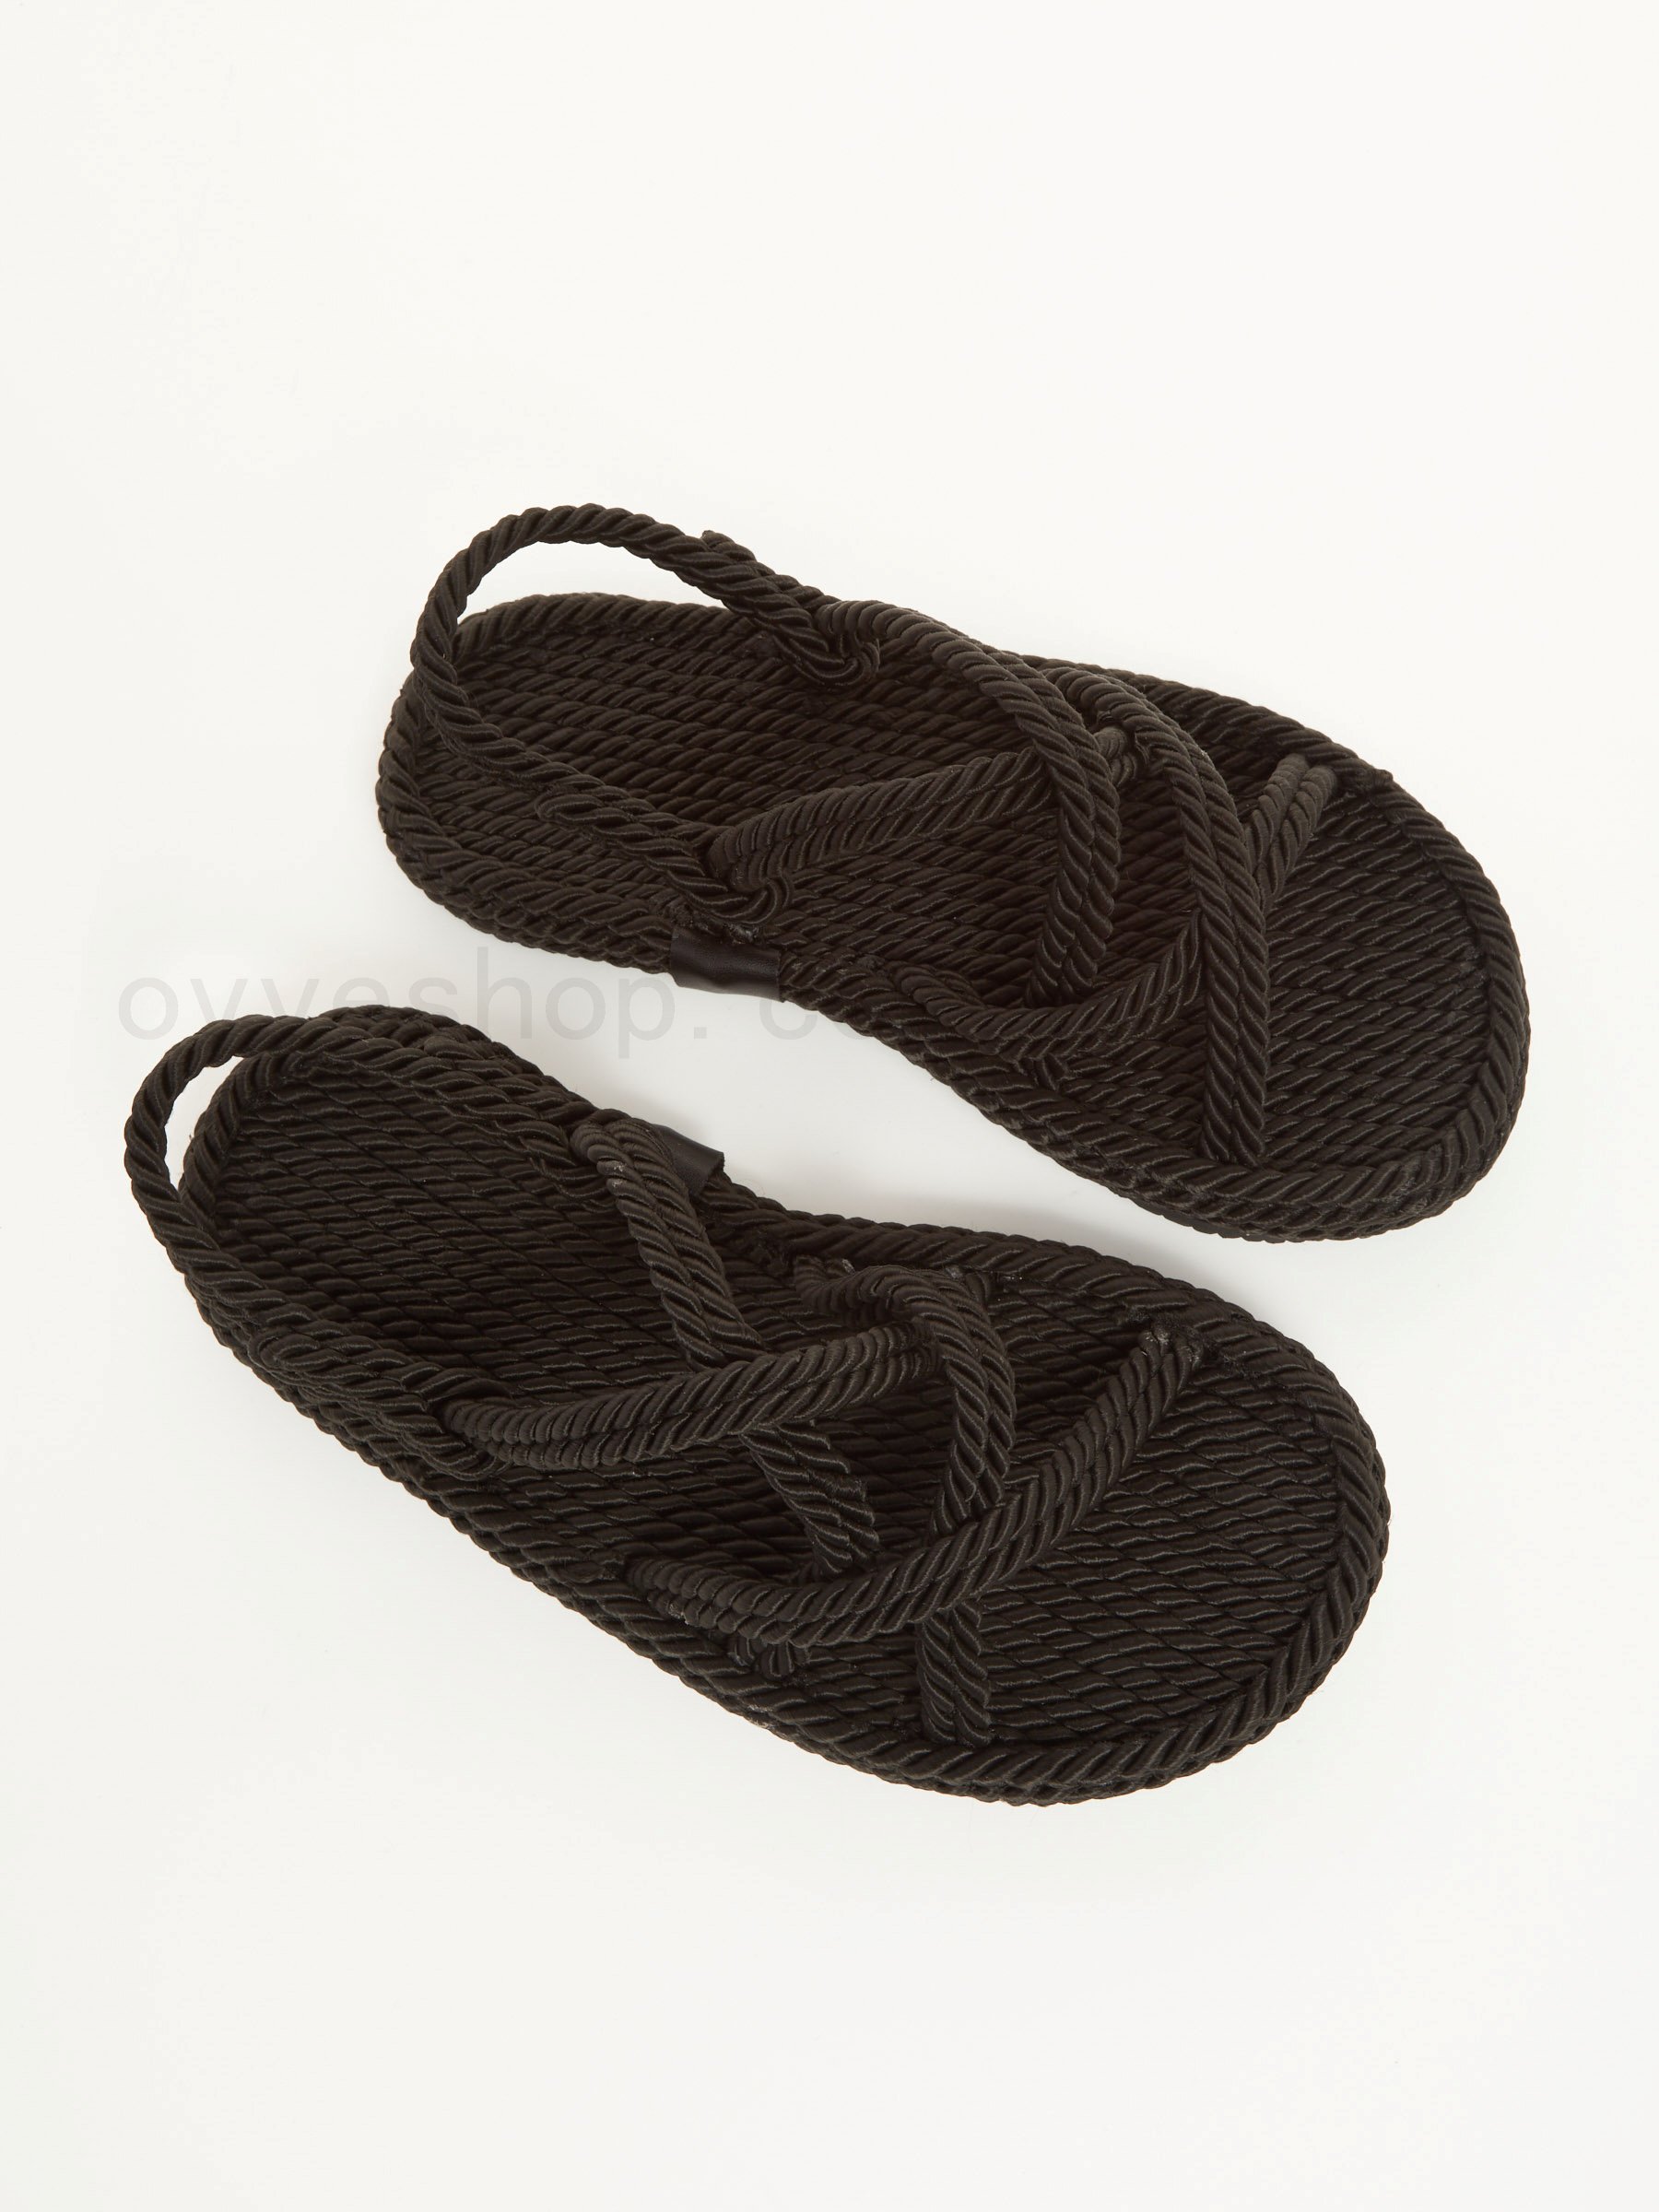 Prezzo Rope Flat Sandals F0817885-0712 ovye saldi